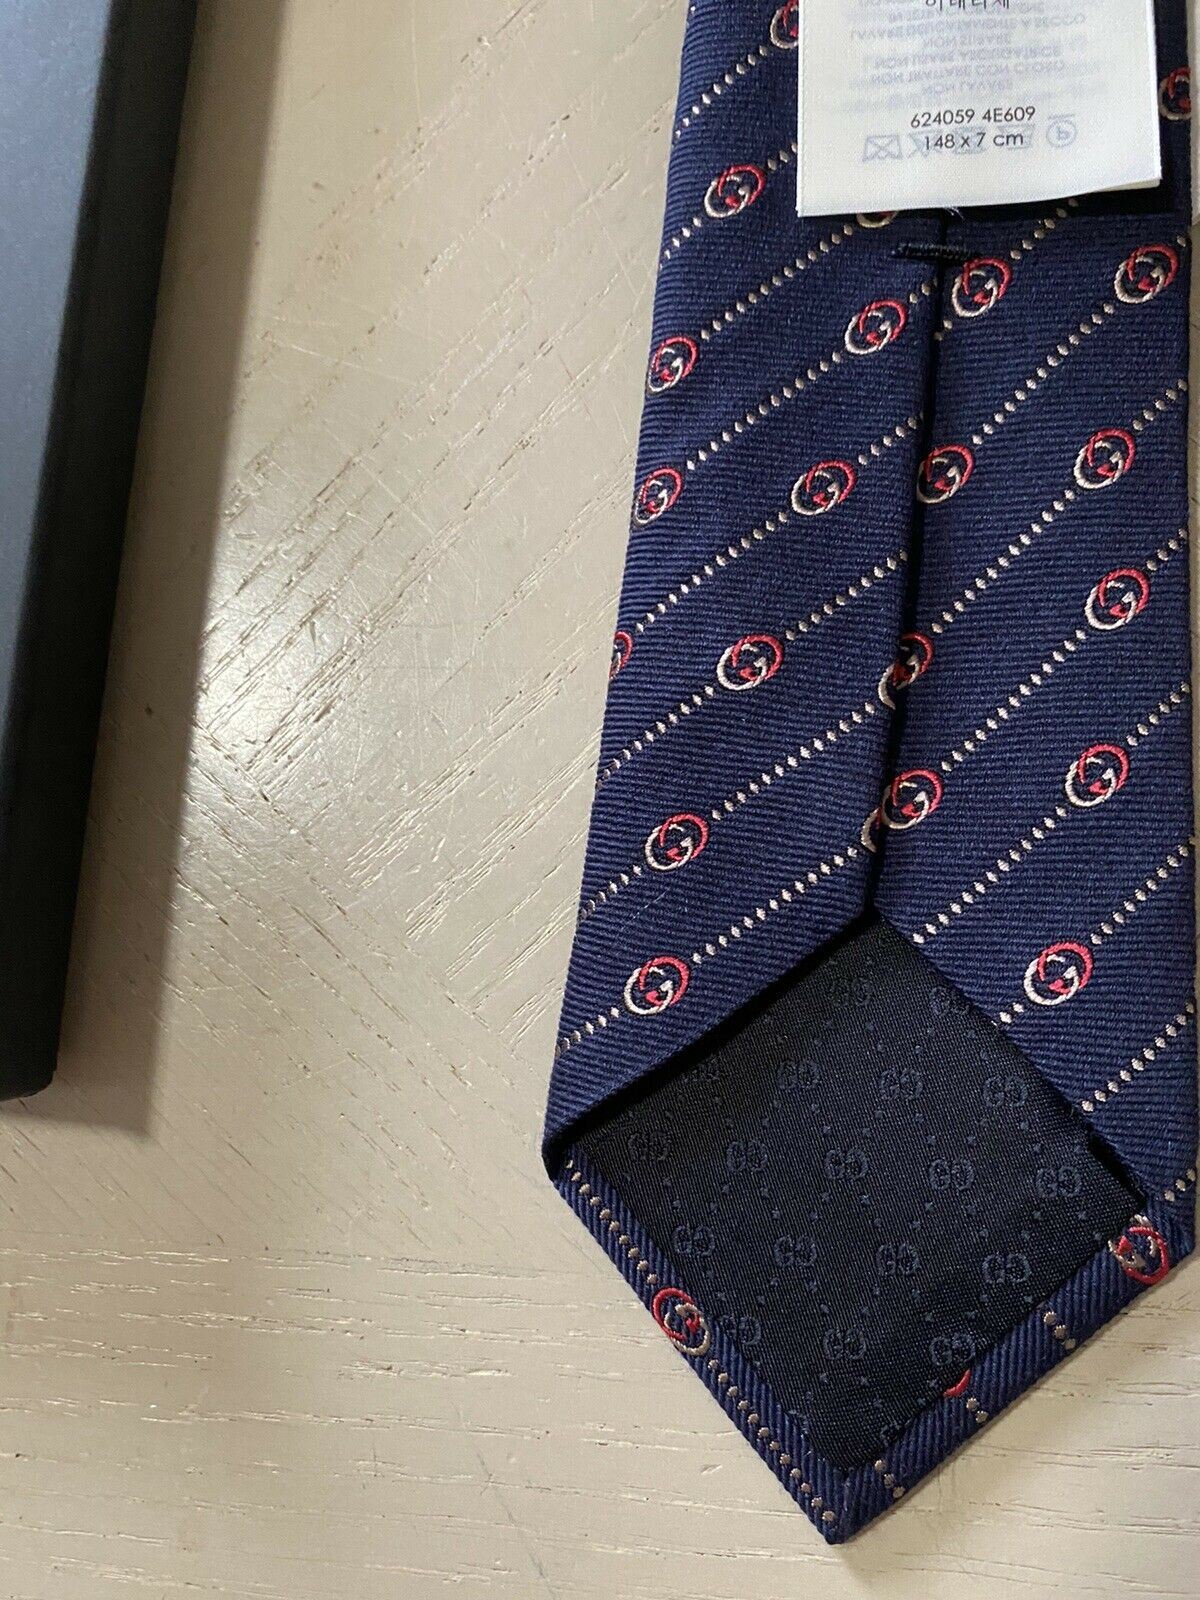 Neue Gucci Herren-Krawatte mit GG-Monogramm, Blau, hergestellt in Italien